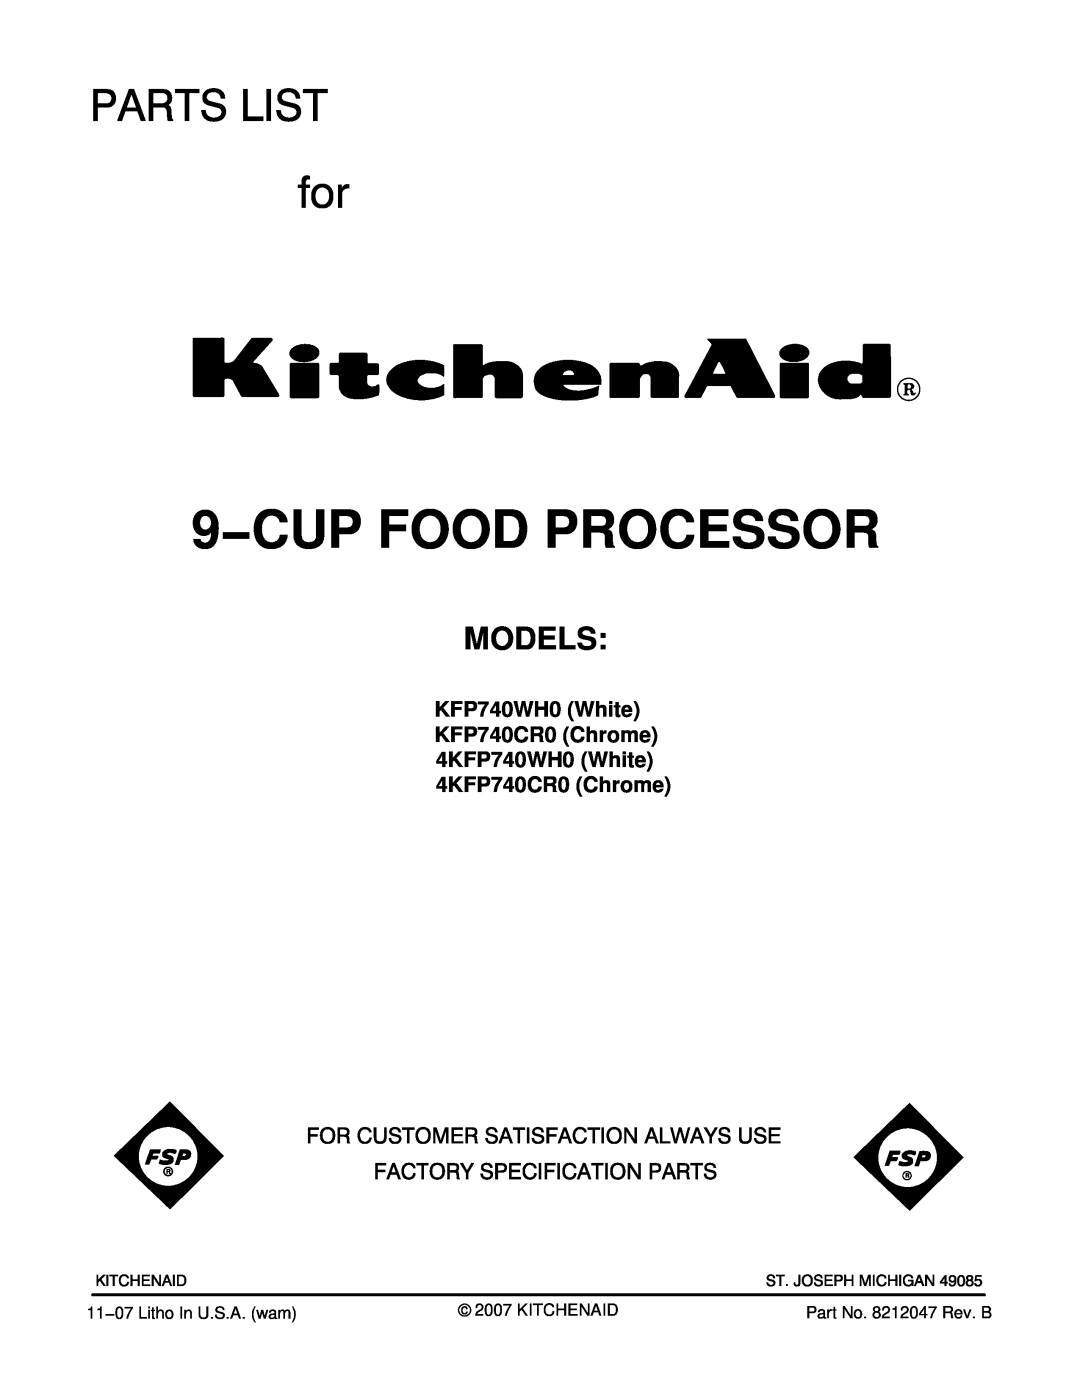 KitchenAid manual Models, KFP740WH0 White KFP740CR0 Chrome 4KFP740WH0 White 4KFP740CR0 Chrome, 9−CUP FOOD PROCESSOR 